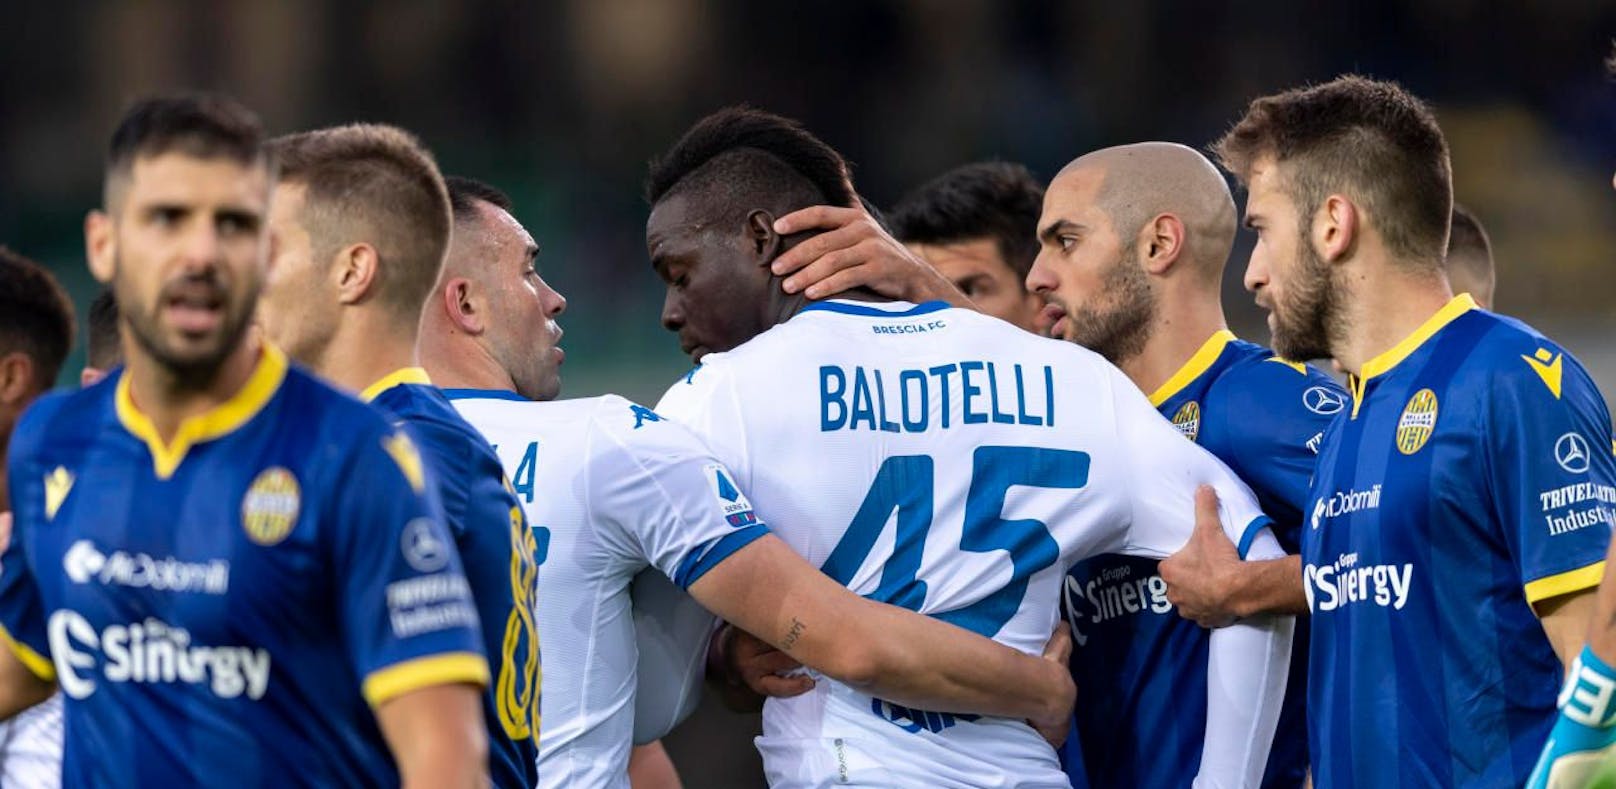 Mario Balotelli (Brescia) wurde Opfer rassistischer Beschimpfungen. Kollegen und Gegner von Verona mussten auf ihn einreden, um ihn zum Weiterspielen zu bewegen.